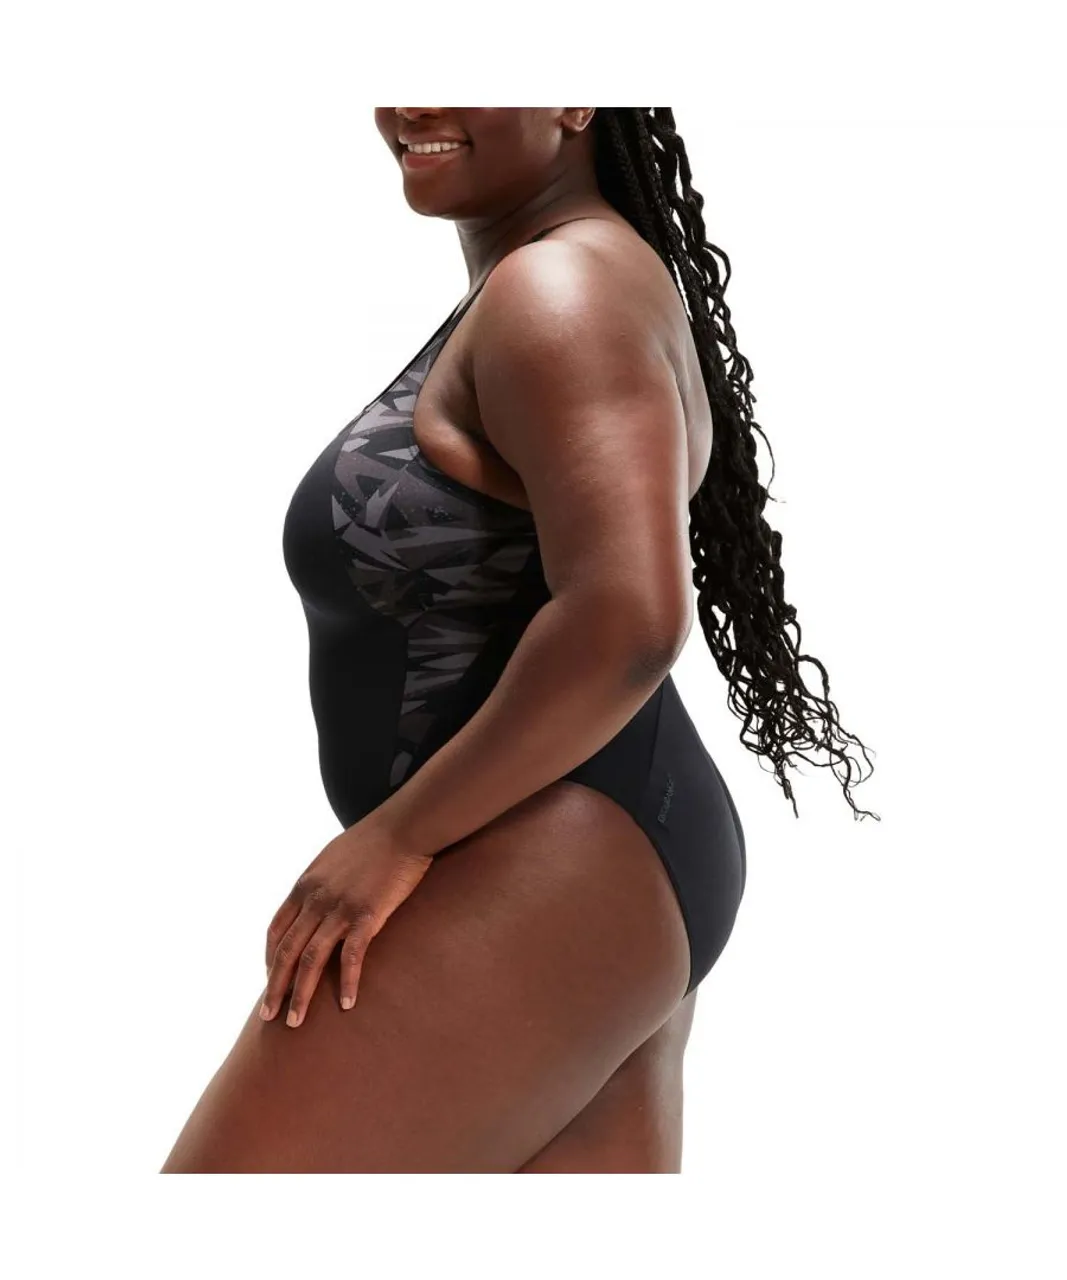 Speedo Womenss Hyperboom Splice Muscleback Swimsuit in Black Grey